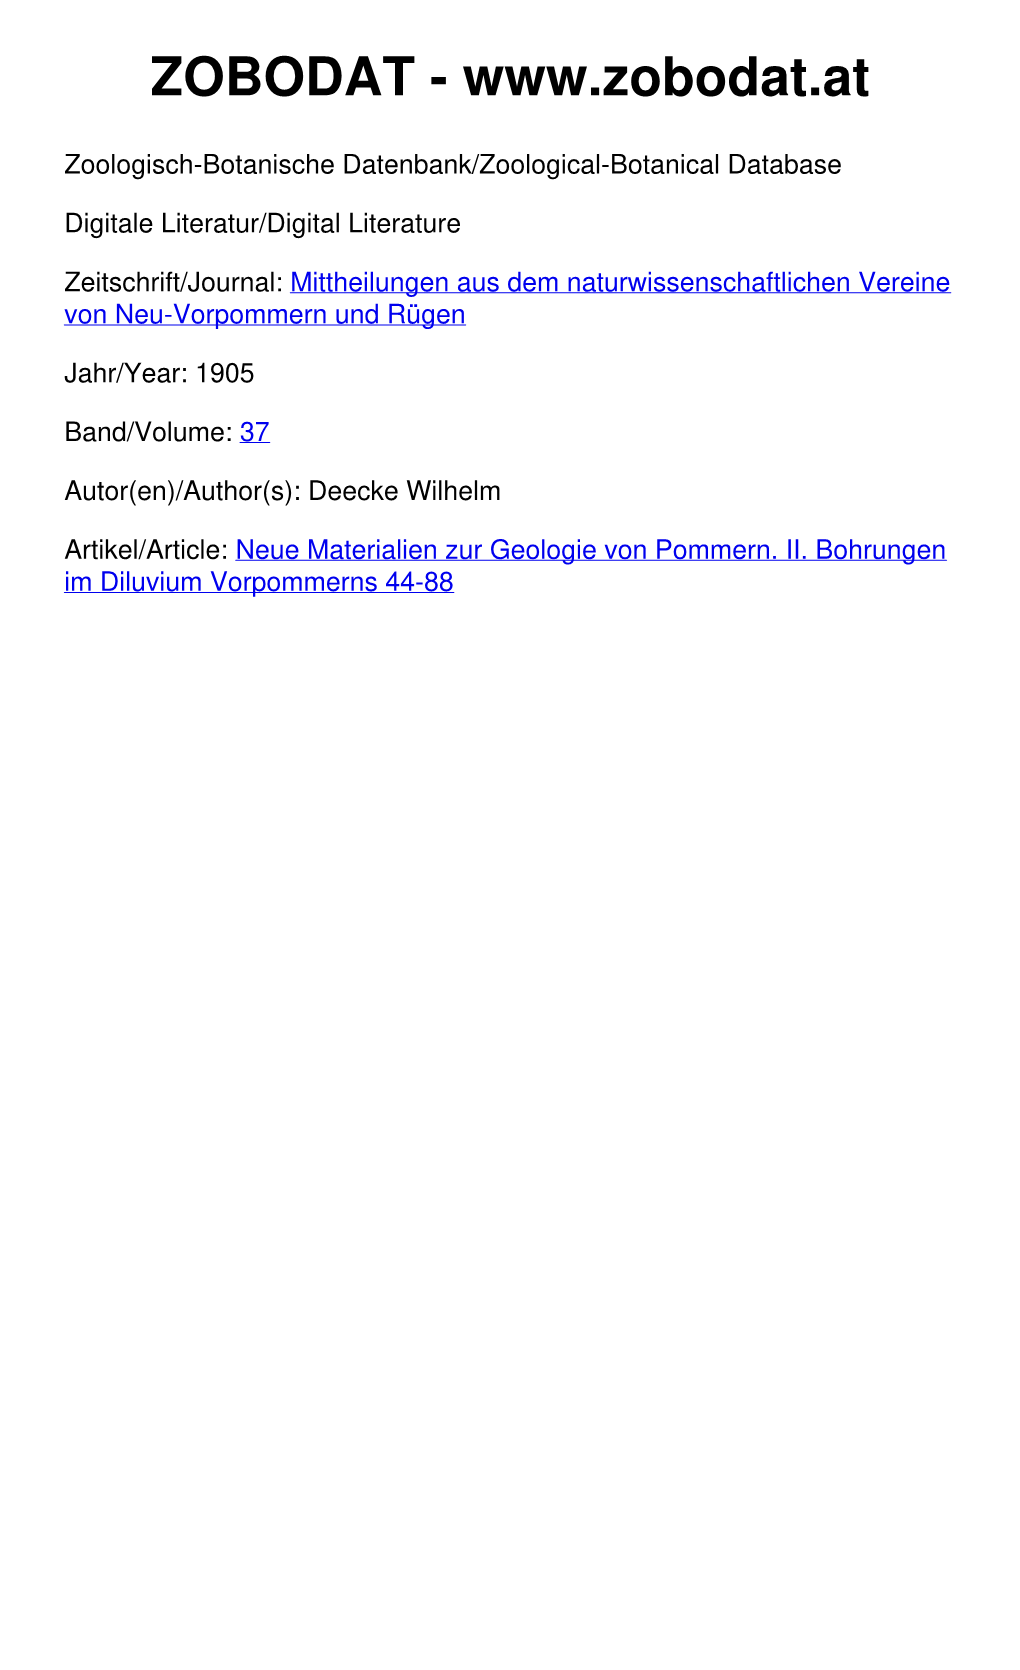 Neue Materialien Zur Geologie Von Pommern. II. Bohrungen Im Diluvium Vorpommerns 44-88 © Biodiversity Heritage Library